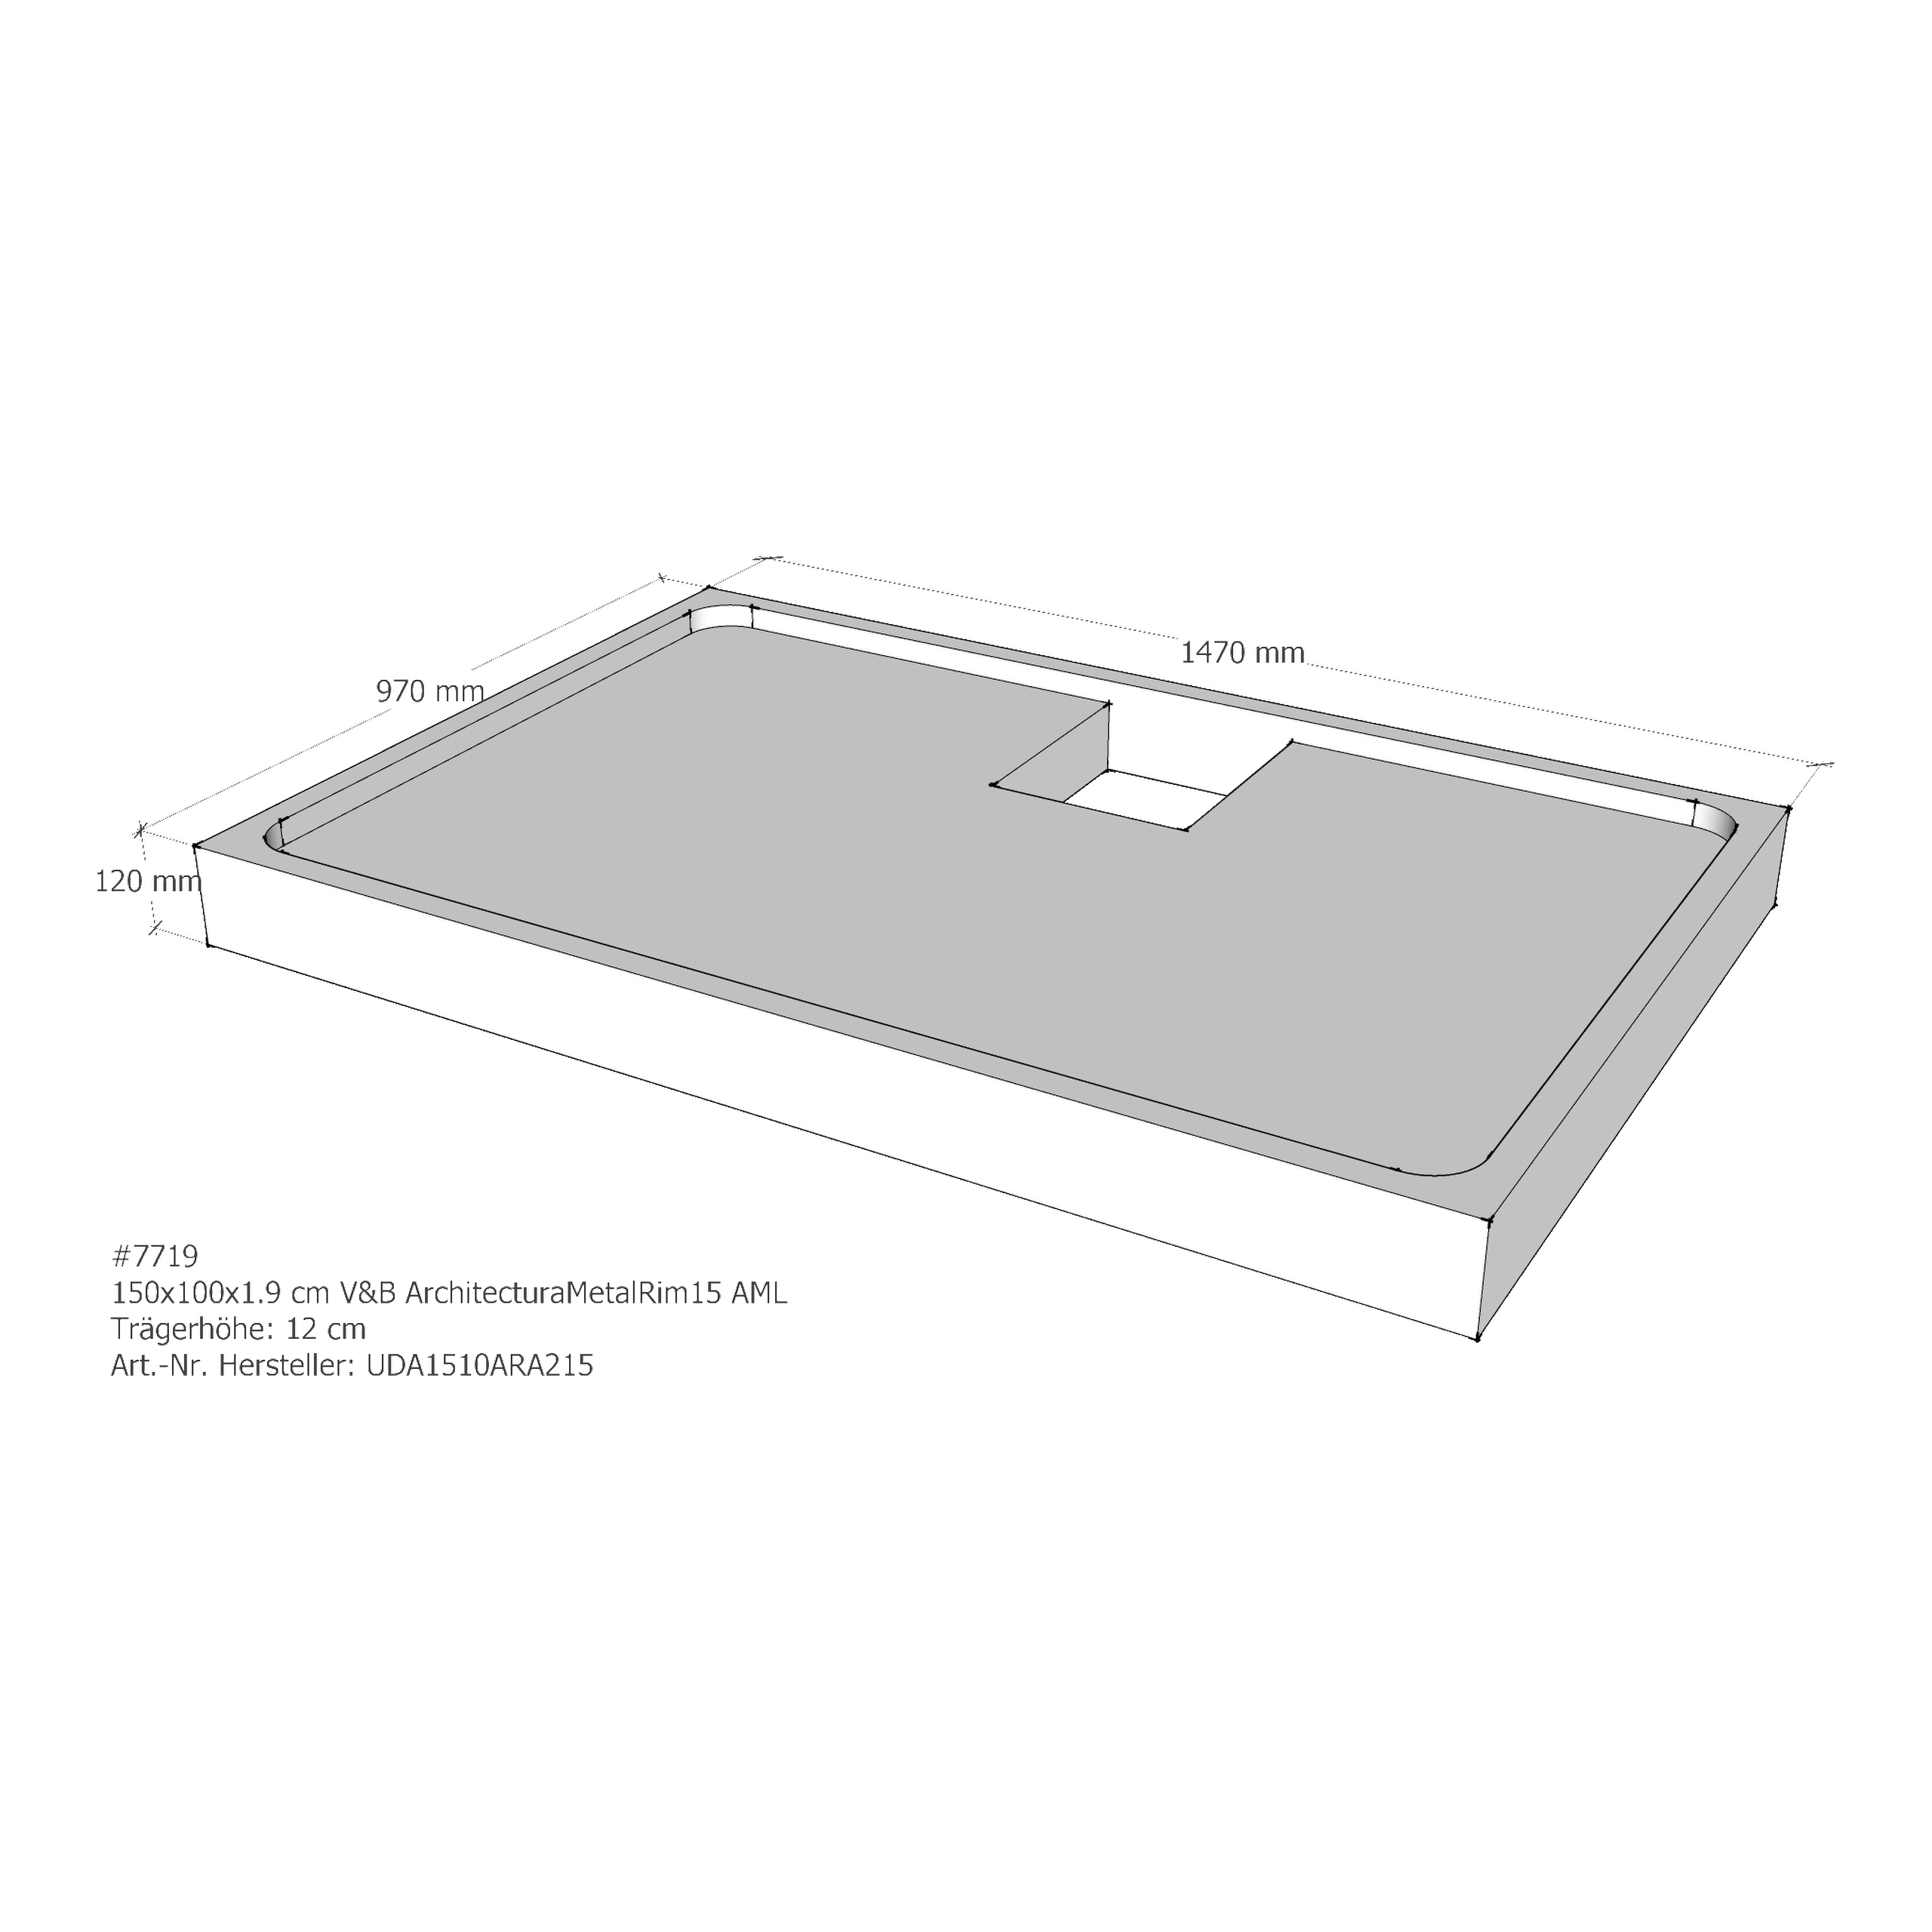 Duschwannenträger für Villeroy & Boch Architectura MetalRim 150 × 100 × 1,9 cm